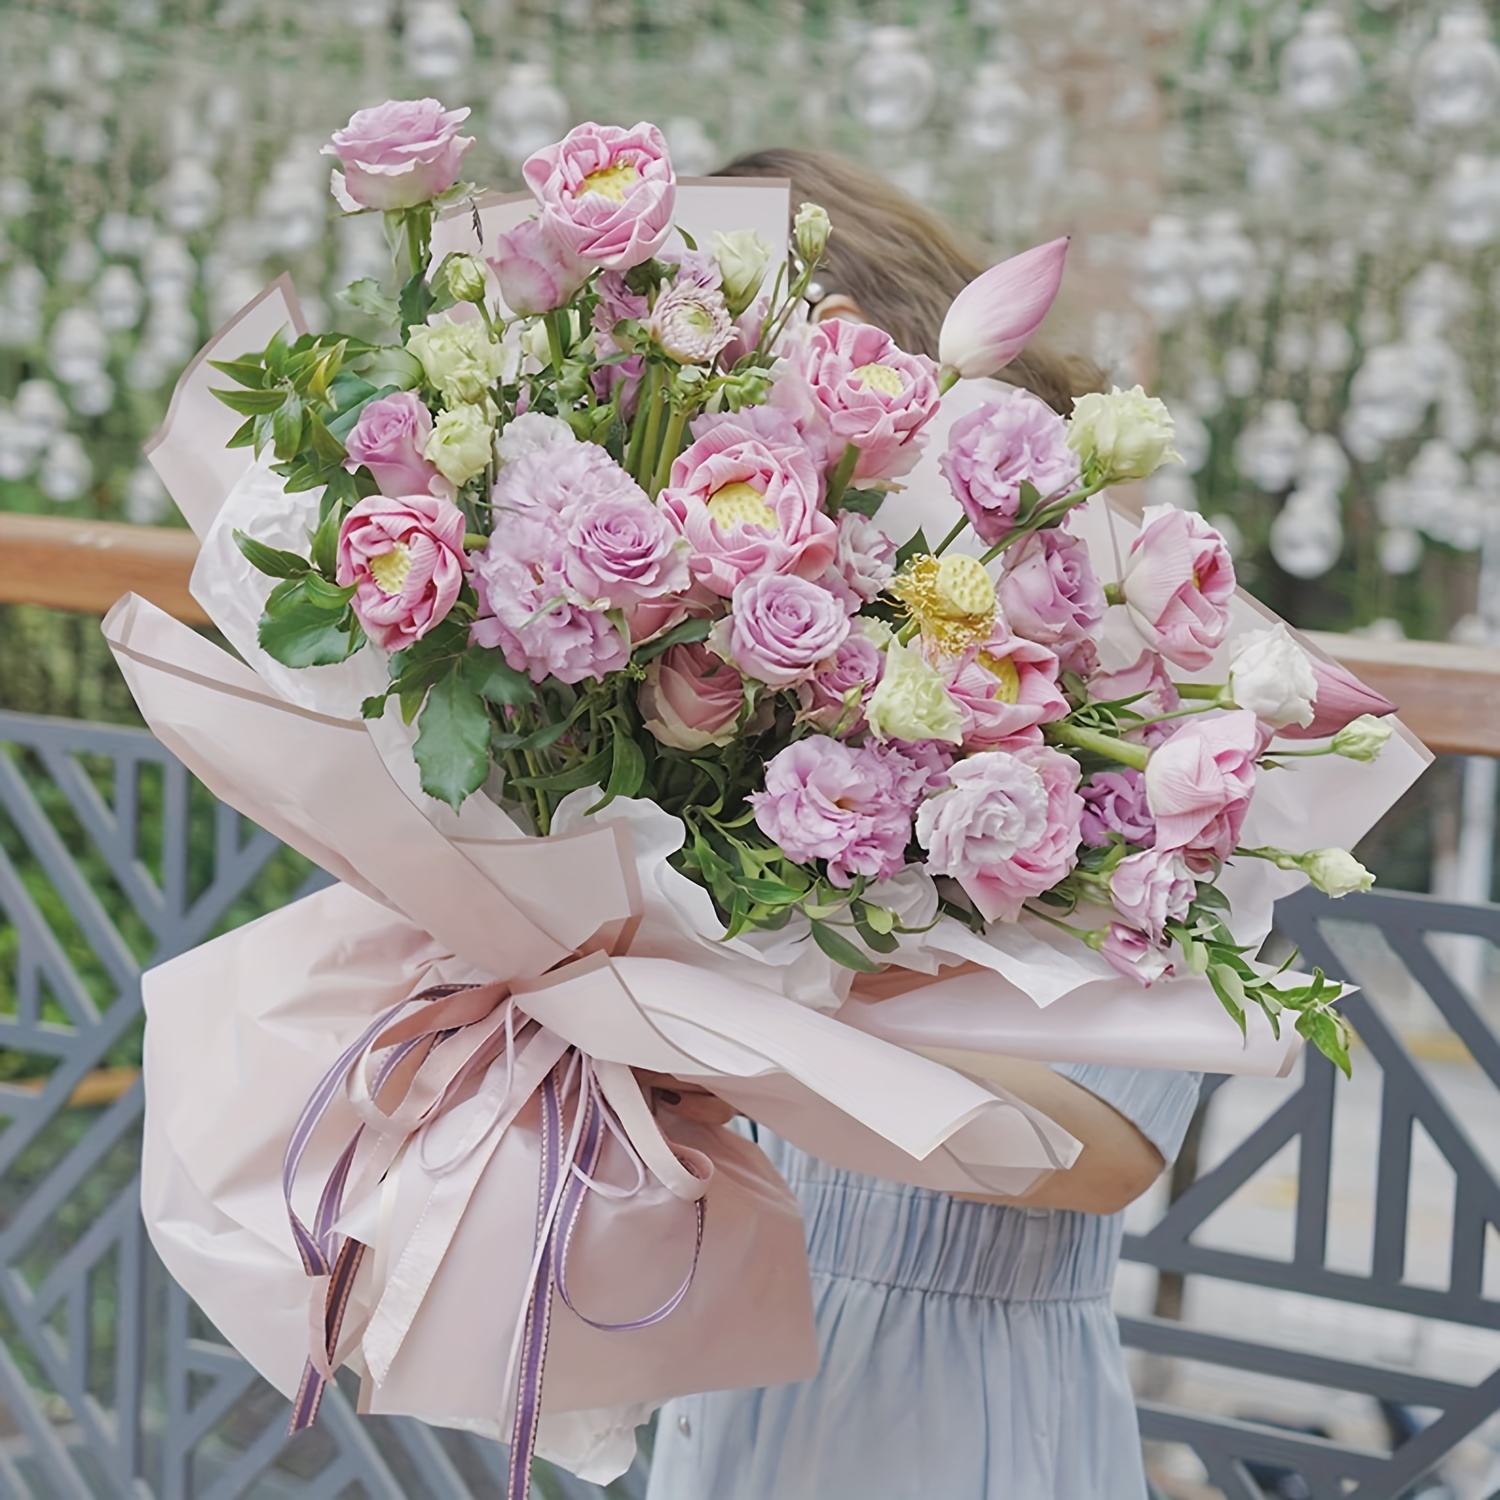  BBJ WRAPS Papel de regalo de flores de estilo coreano Ramo  floral Suministros de embalaje de regalo Multi colores 20 unidades (negro)  : Salud y Hogar